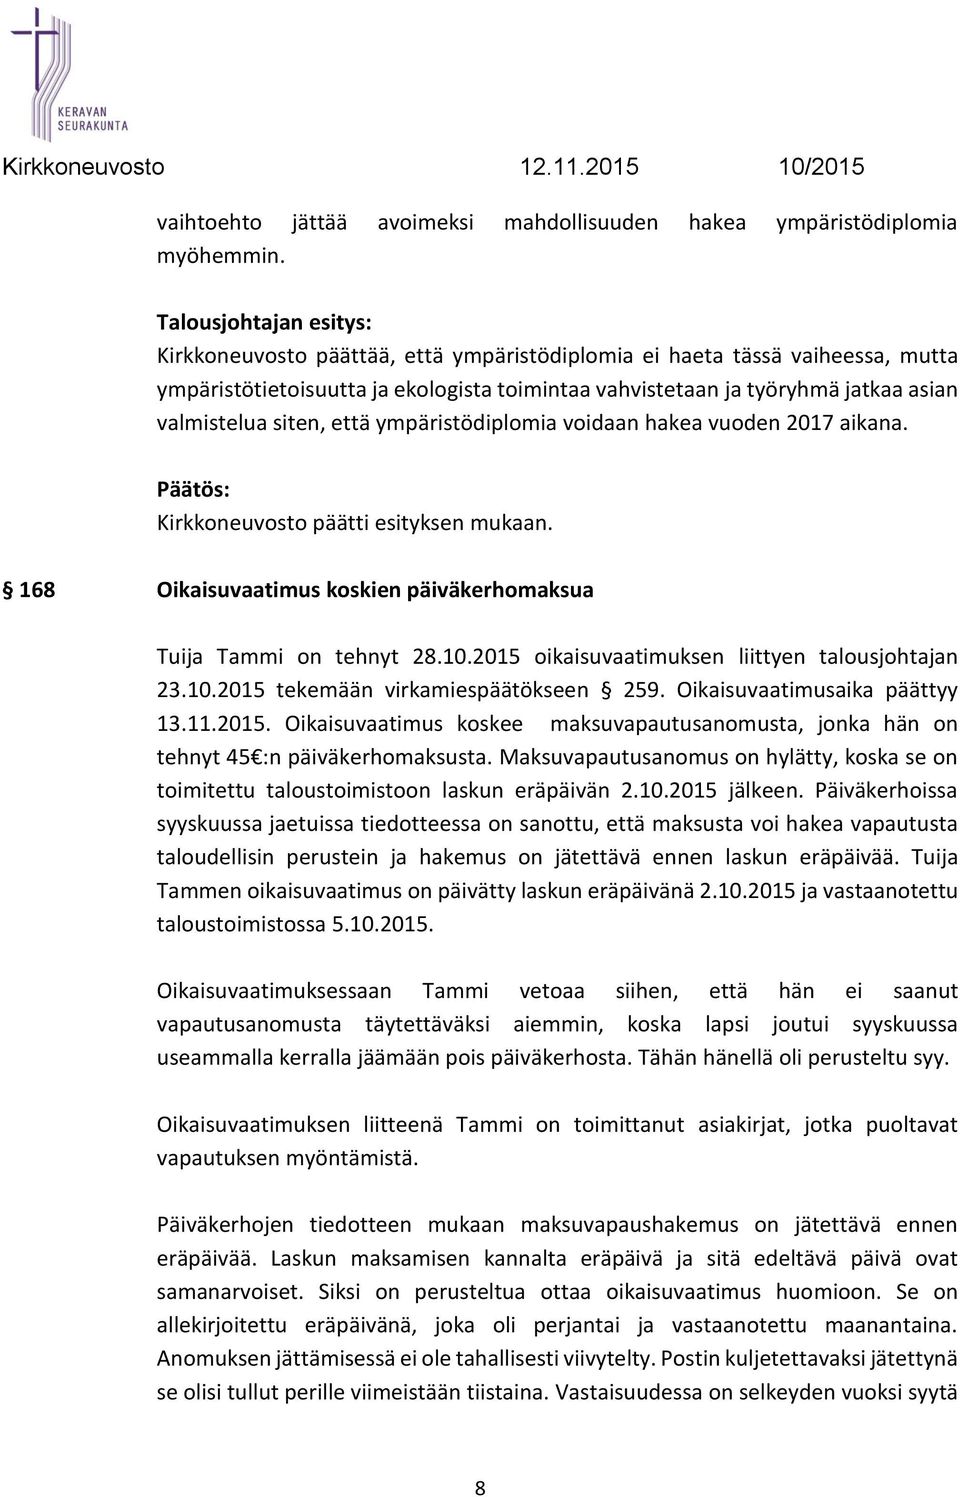 siten, että ympäristödiplomia voidaan hakea vuoden 2017 aikana. 168 Oikaisuvaatimus koskien päiväkerhomaksua Tuija Tammi on tehnyt 28.10.2015 oikaisuvaatimuksen liittyen talousjohtajan 23.10.2015 tekemään virkamiespäätökseen 259.